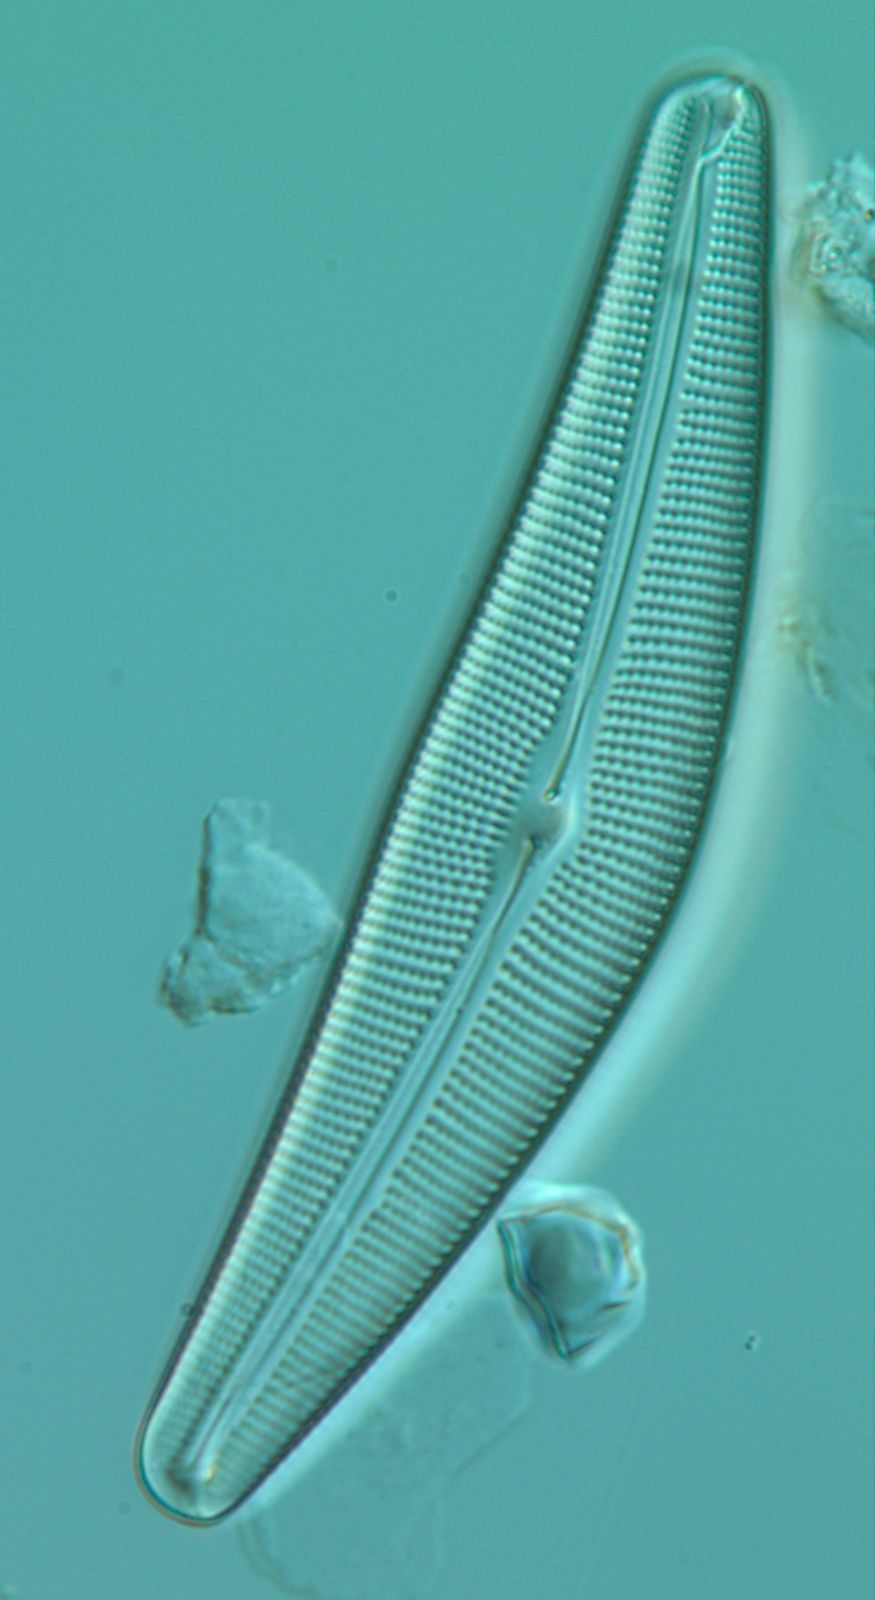 Une diatomée grossie 1000 fois. Il s'agit de l'espèce Cymbella aspera (taille moyenne : 110 µm de long et 25 µm de large) - photo d'Olivier Herlory